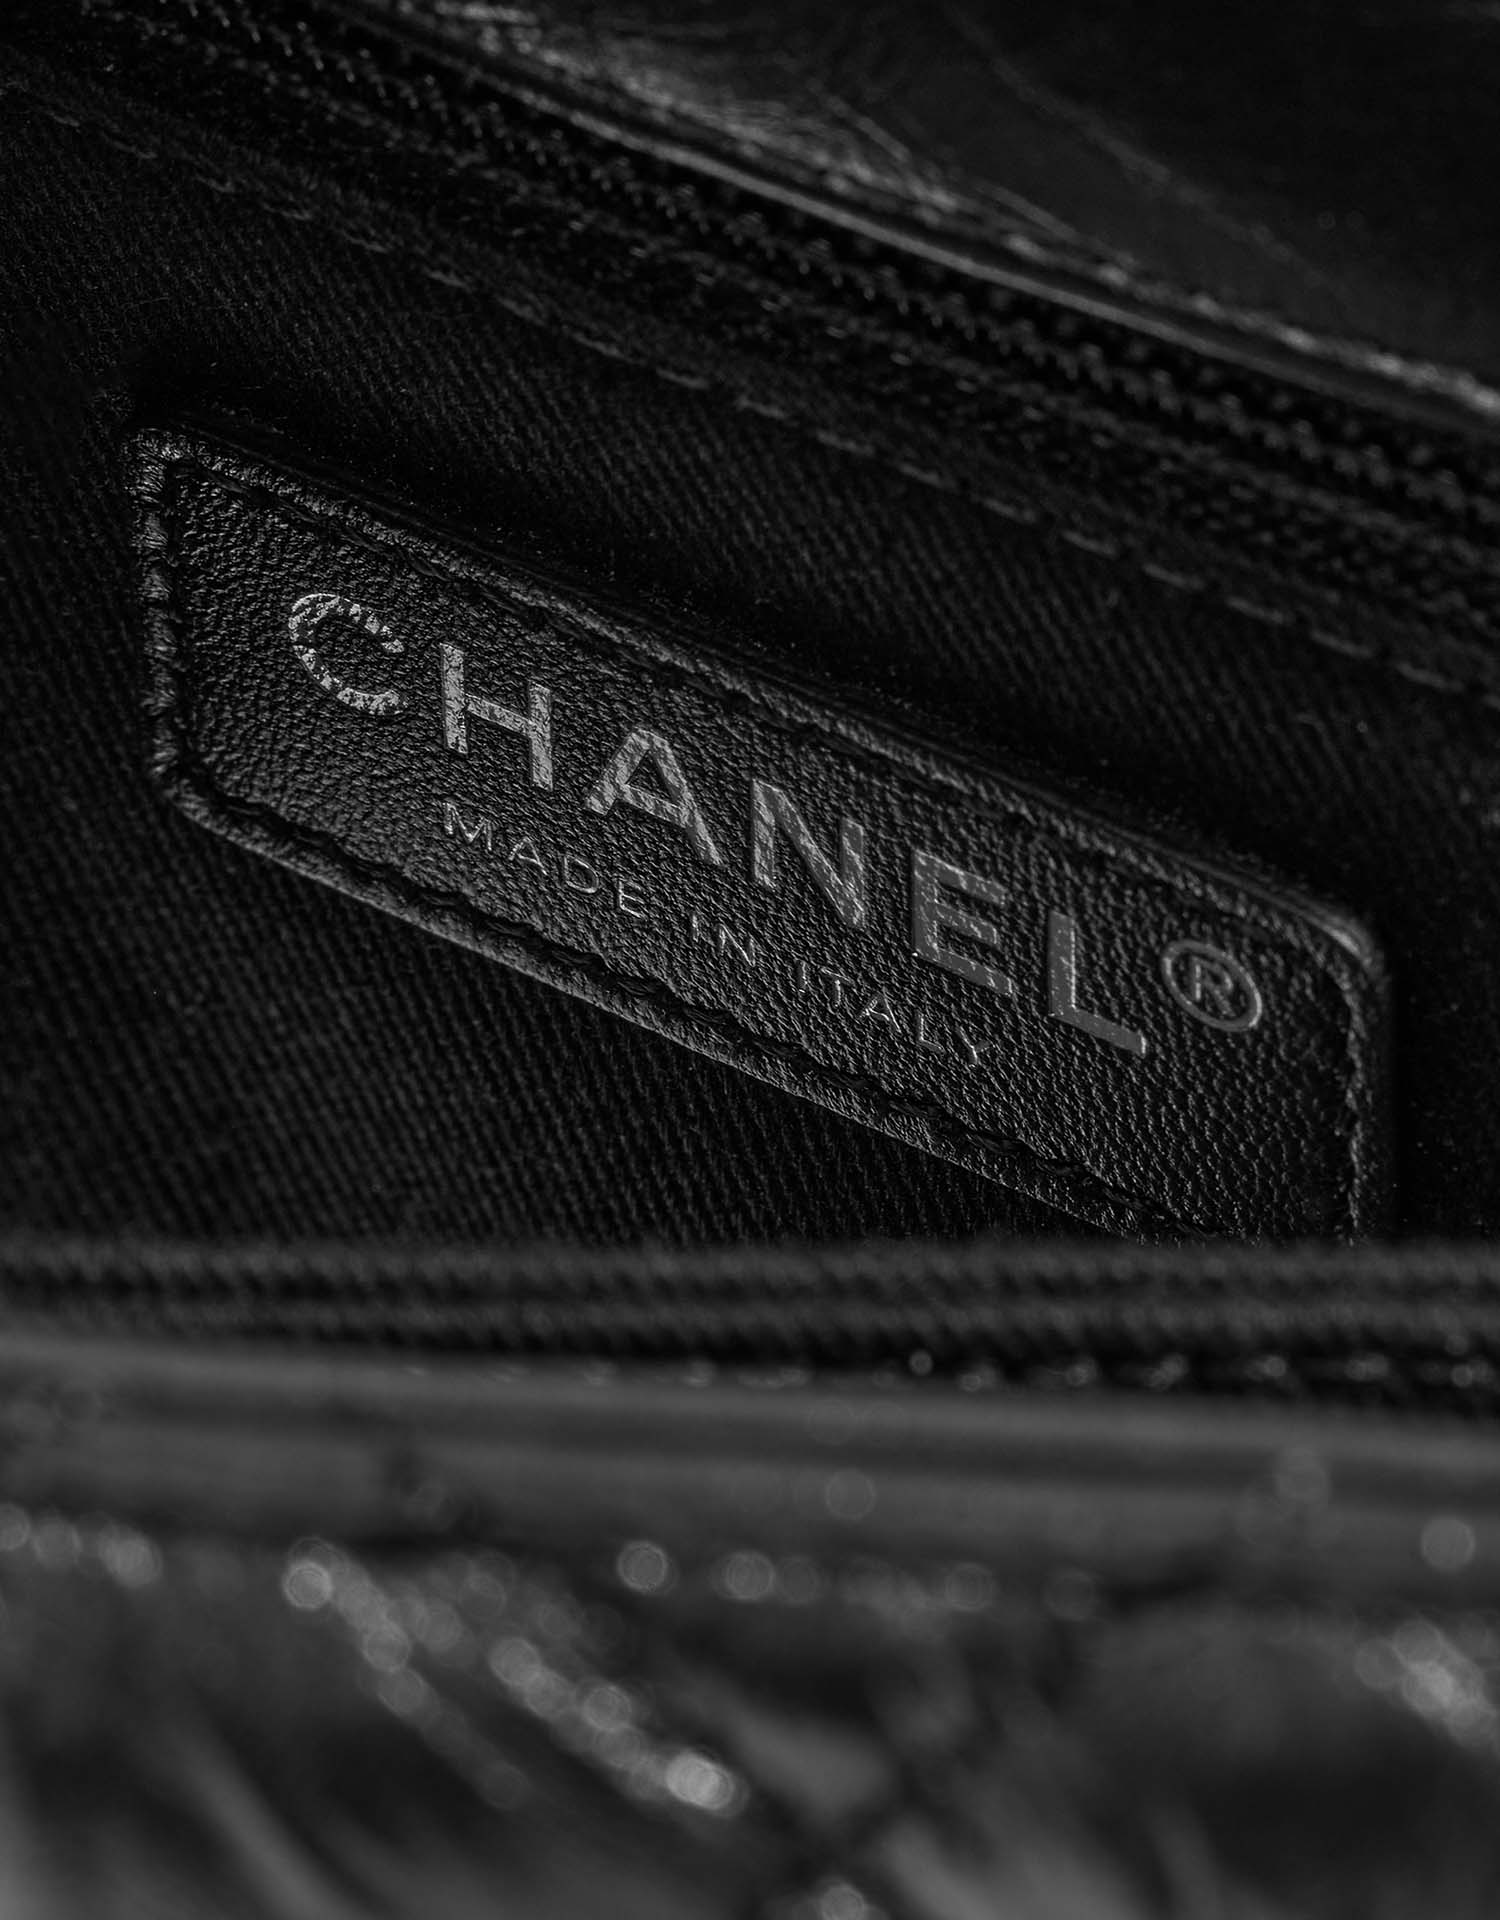 Chanel TimelessHandle Small Black Logo | Verkaufen Sie Ihre Designer-Tasche auf Saclab.com